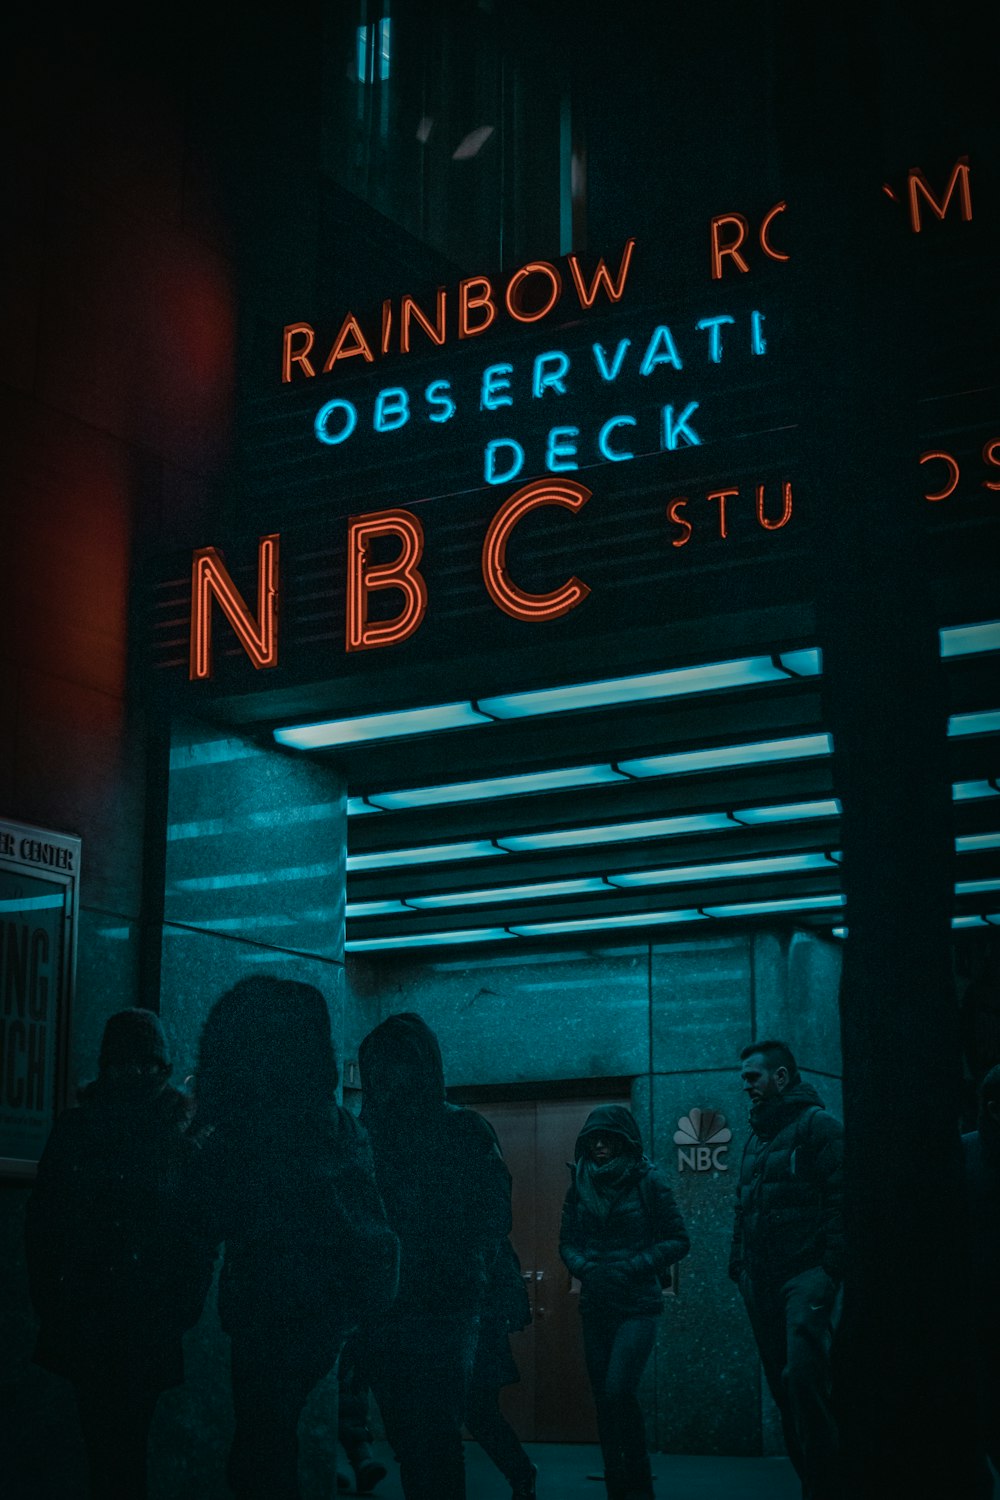 Magasin Rainbow NBC